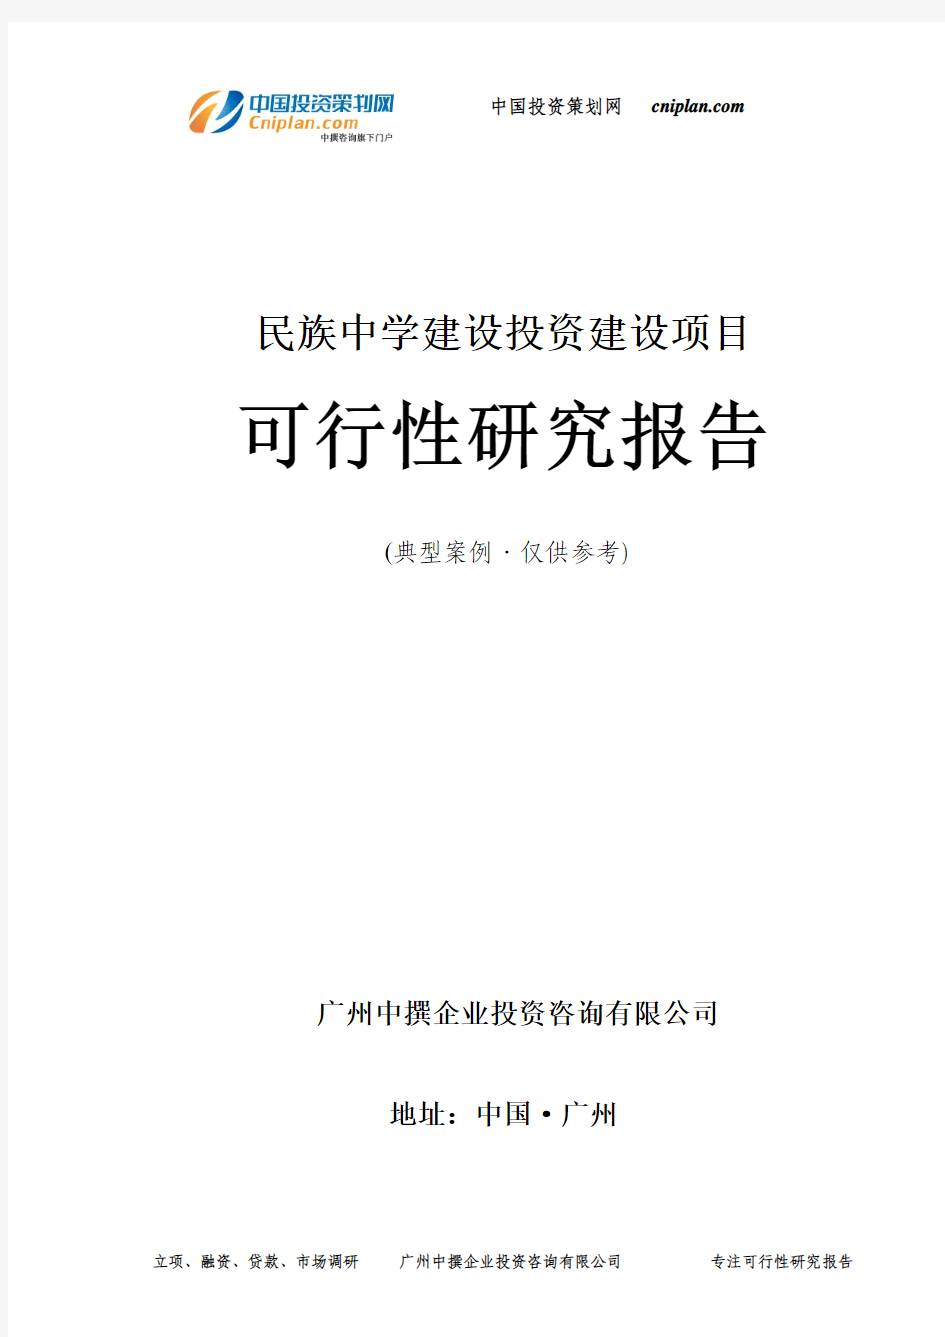 民族中学建设投资建设项目可行性研究报告-广州中撰咨询